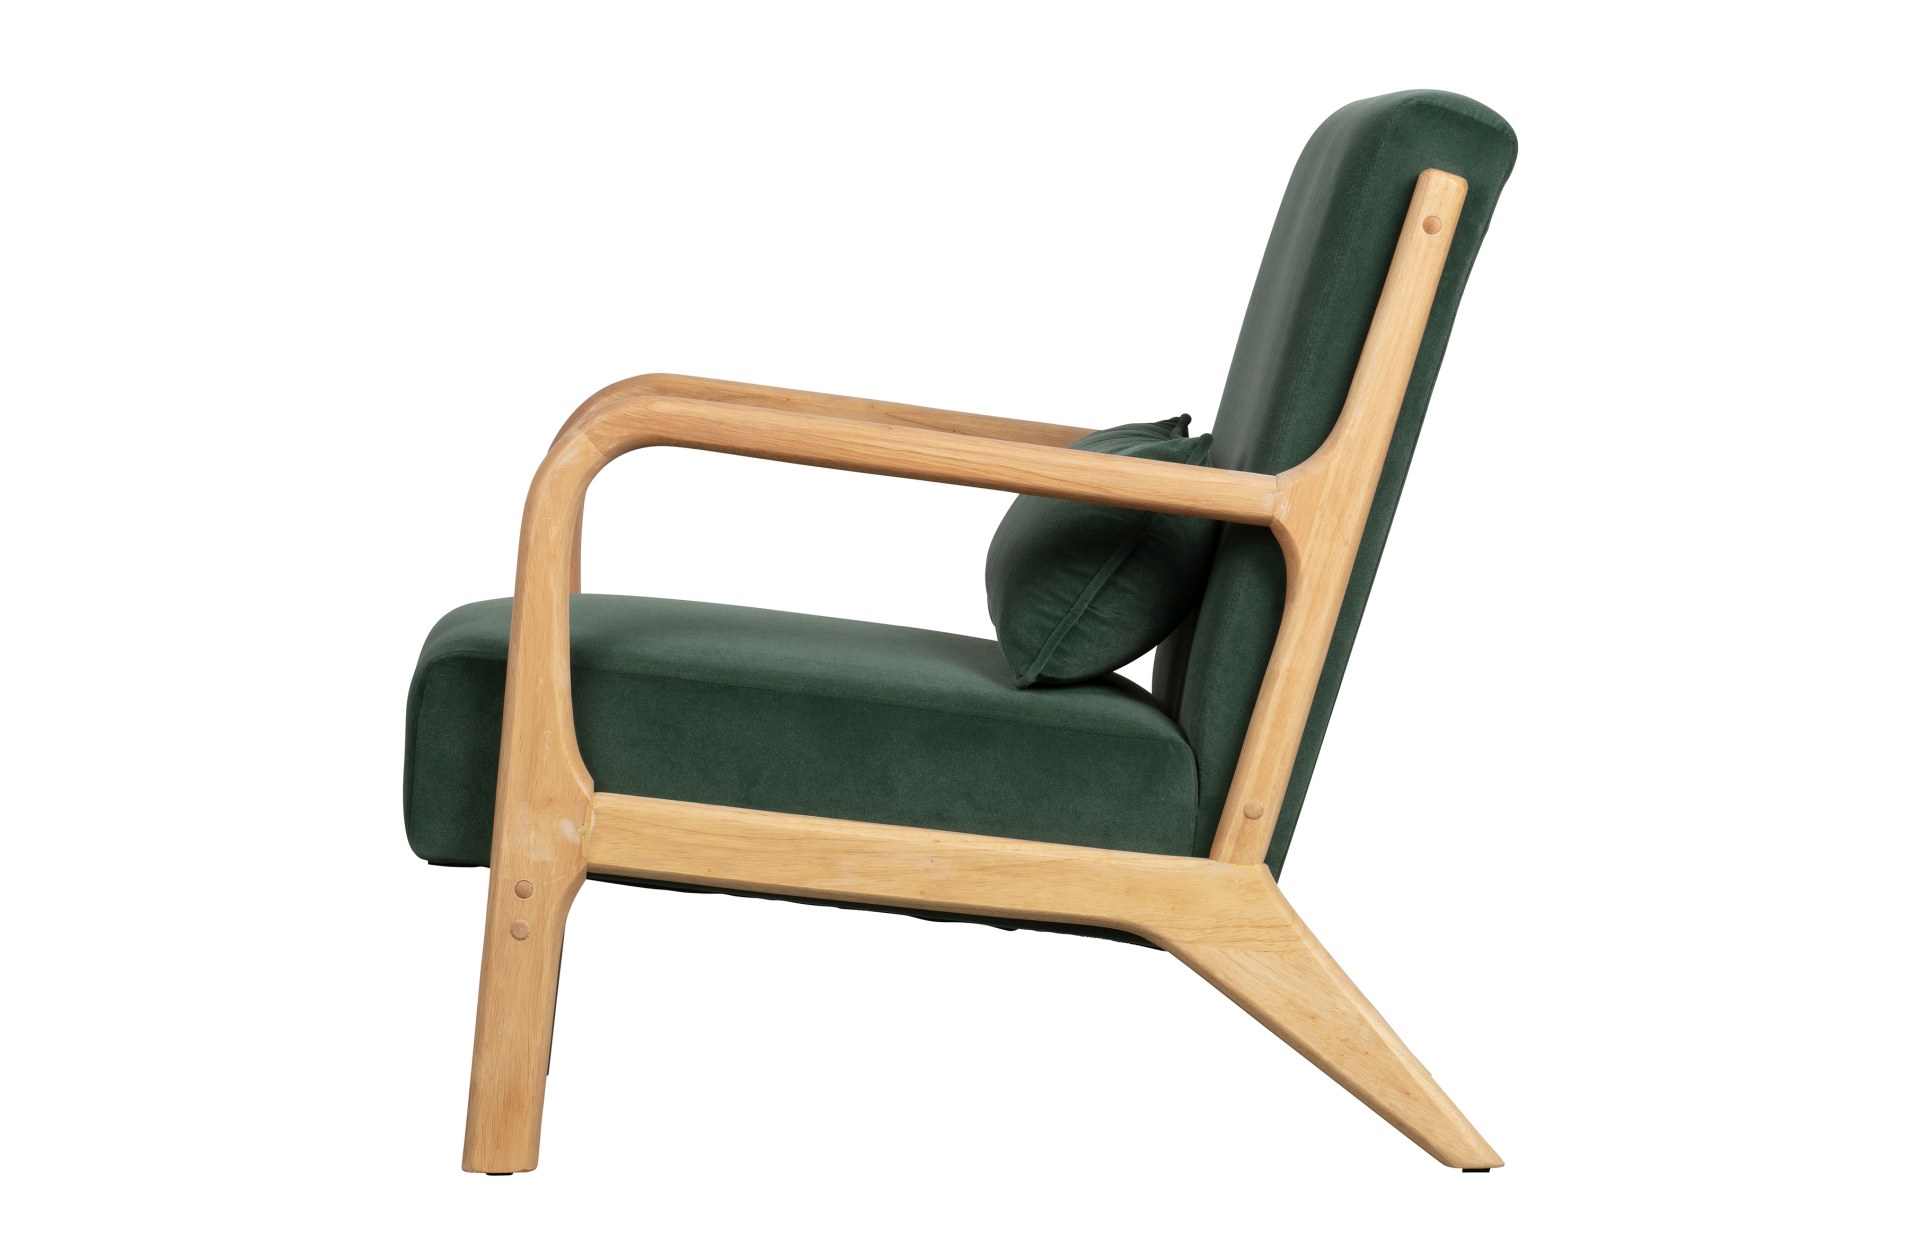 Der Sessel Mark überzeugt mit seinem Skandinavischen Design. Gefertigt wurde der Sessel aus einem Samt Bezug, welcher in einem grünen Farbton ist. Das Gestell ist aus Holz.